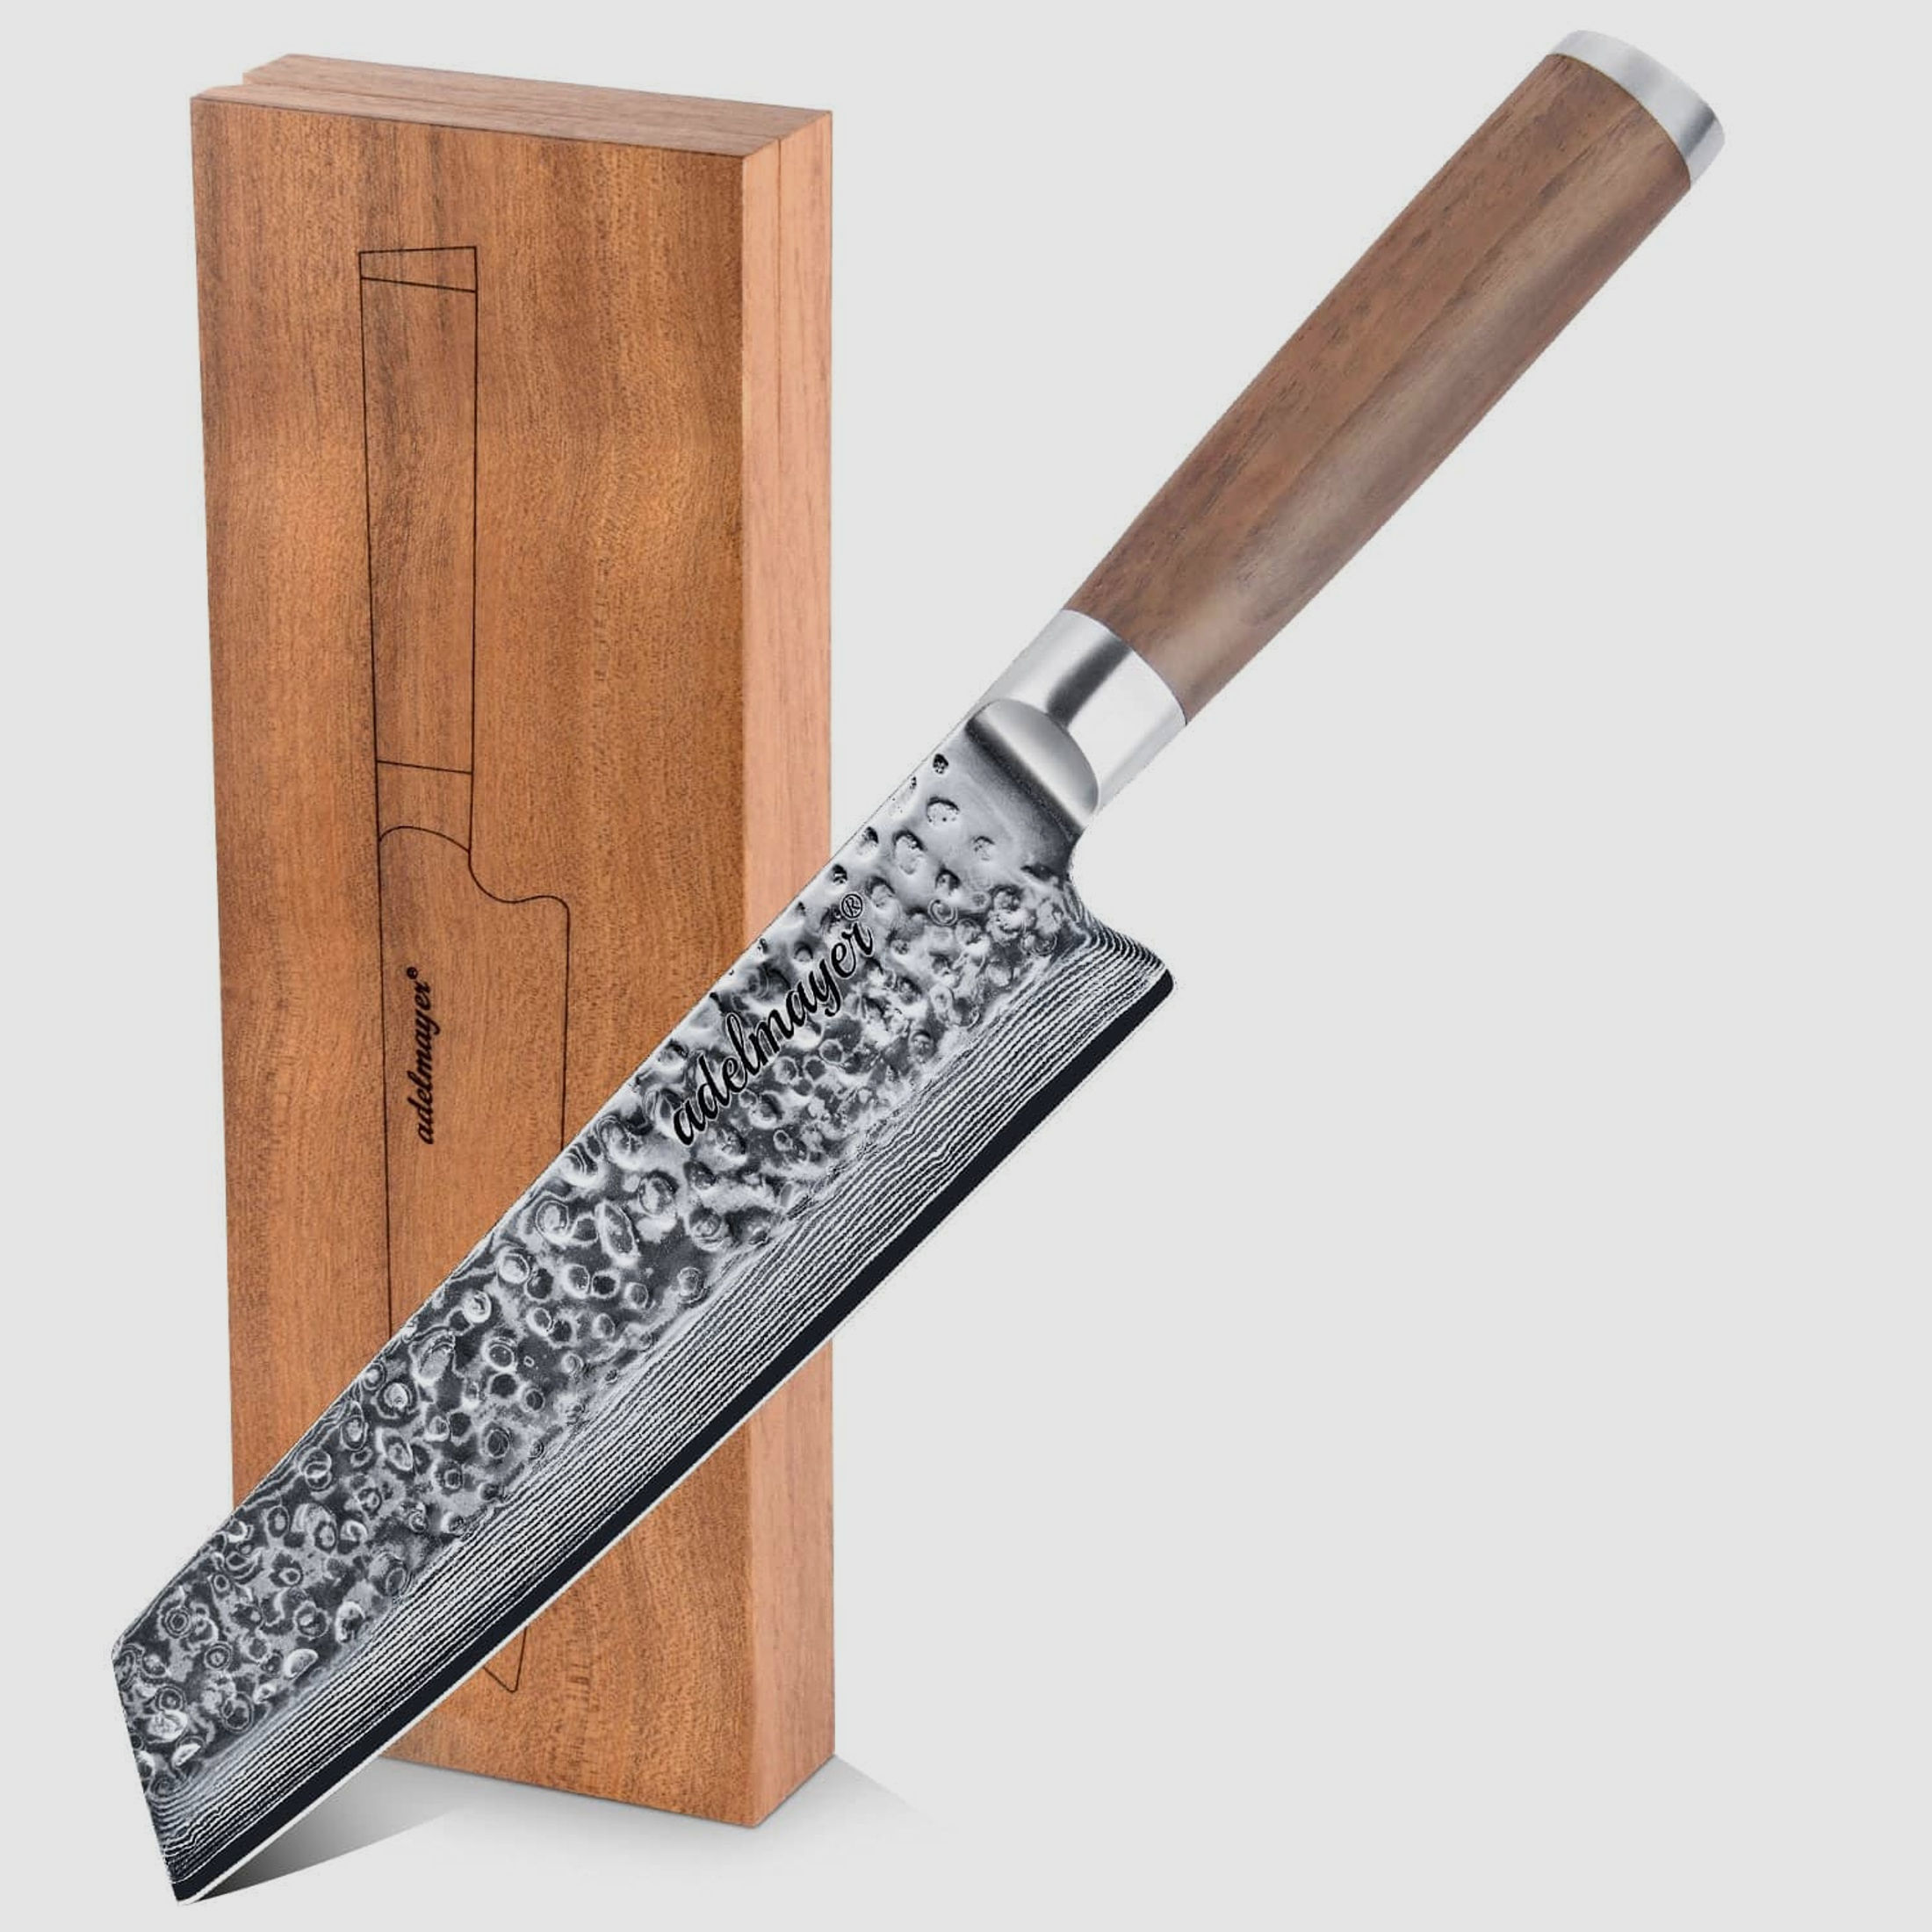 adelmayer® Damast Kiritsukemesser 18 cm handgeschliffen und mit Walnussgriff